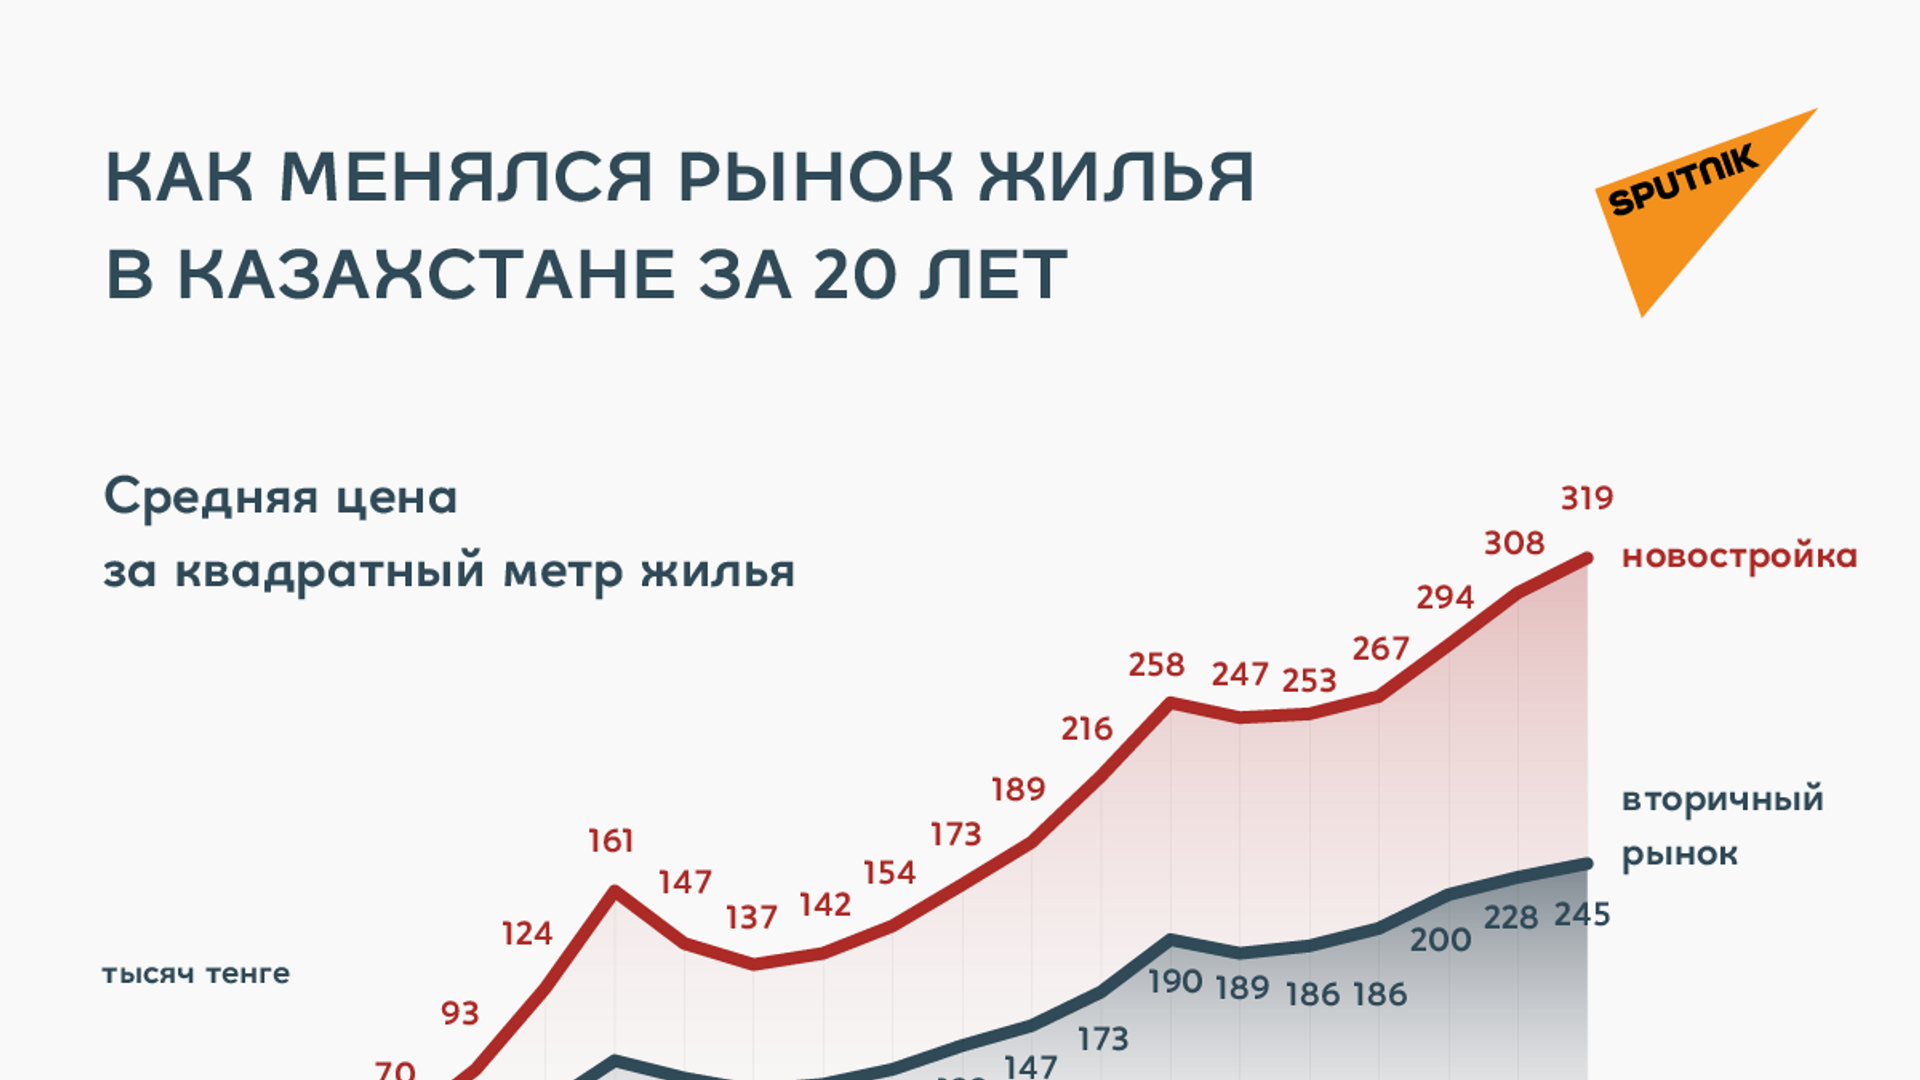 Сдача жилья в аренду и перепродажа квартир - насколько это выгодно в Казахстане - Sputnik Казахстан, 1920, 14.05.2021